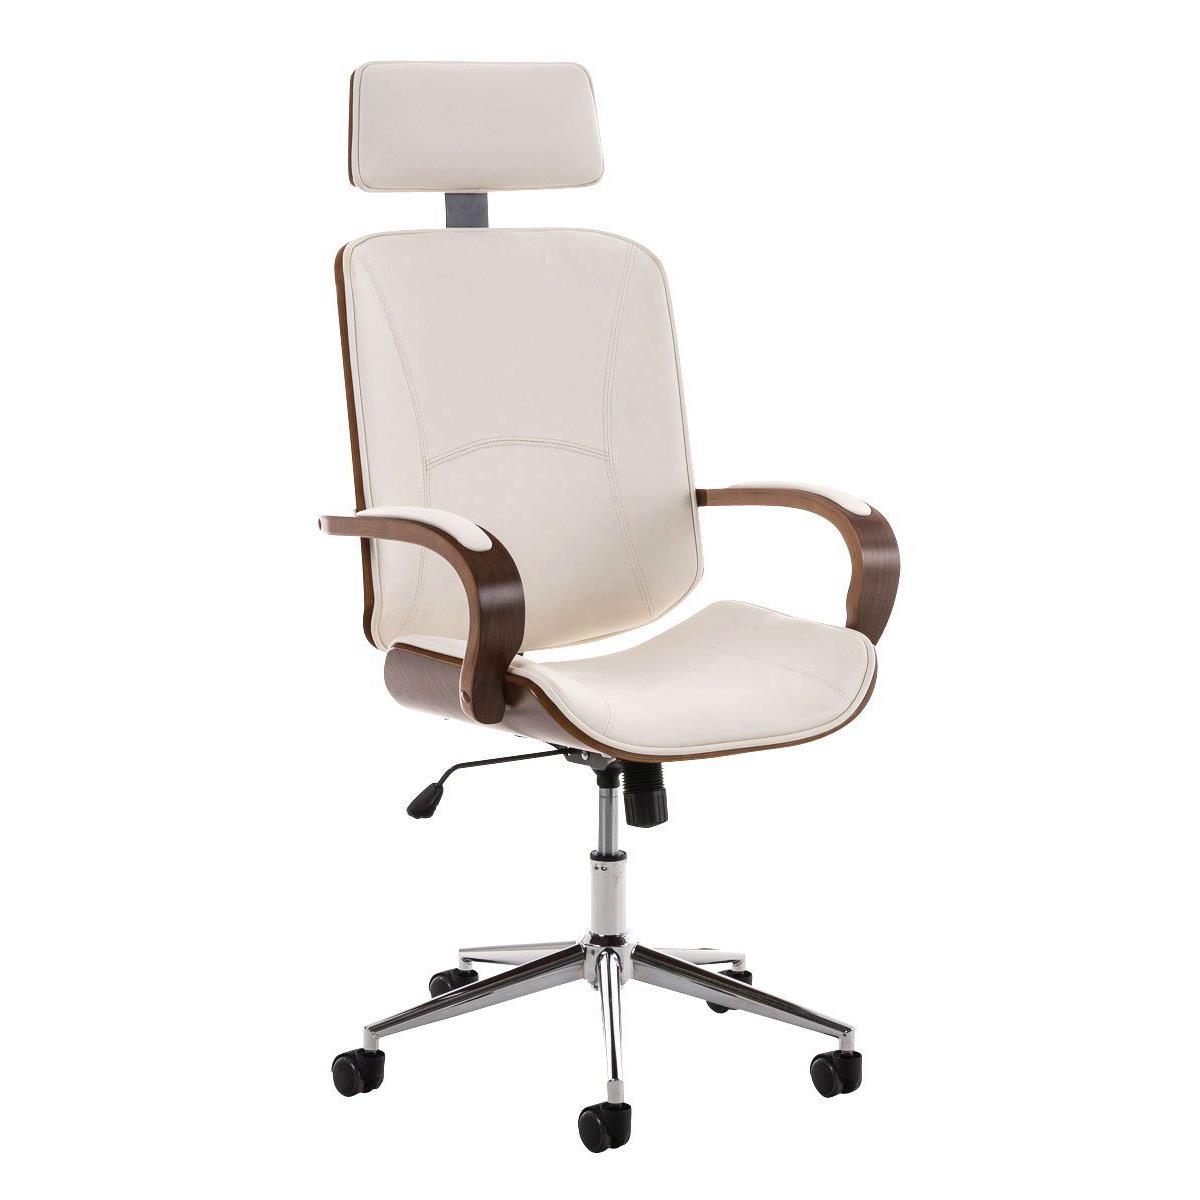 Chaise de bureau JUDITH, Grand rembourrage, Design élégant en Bois et cuir, Blanc